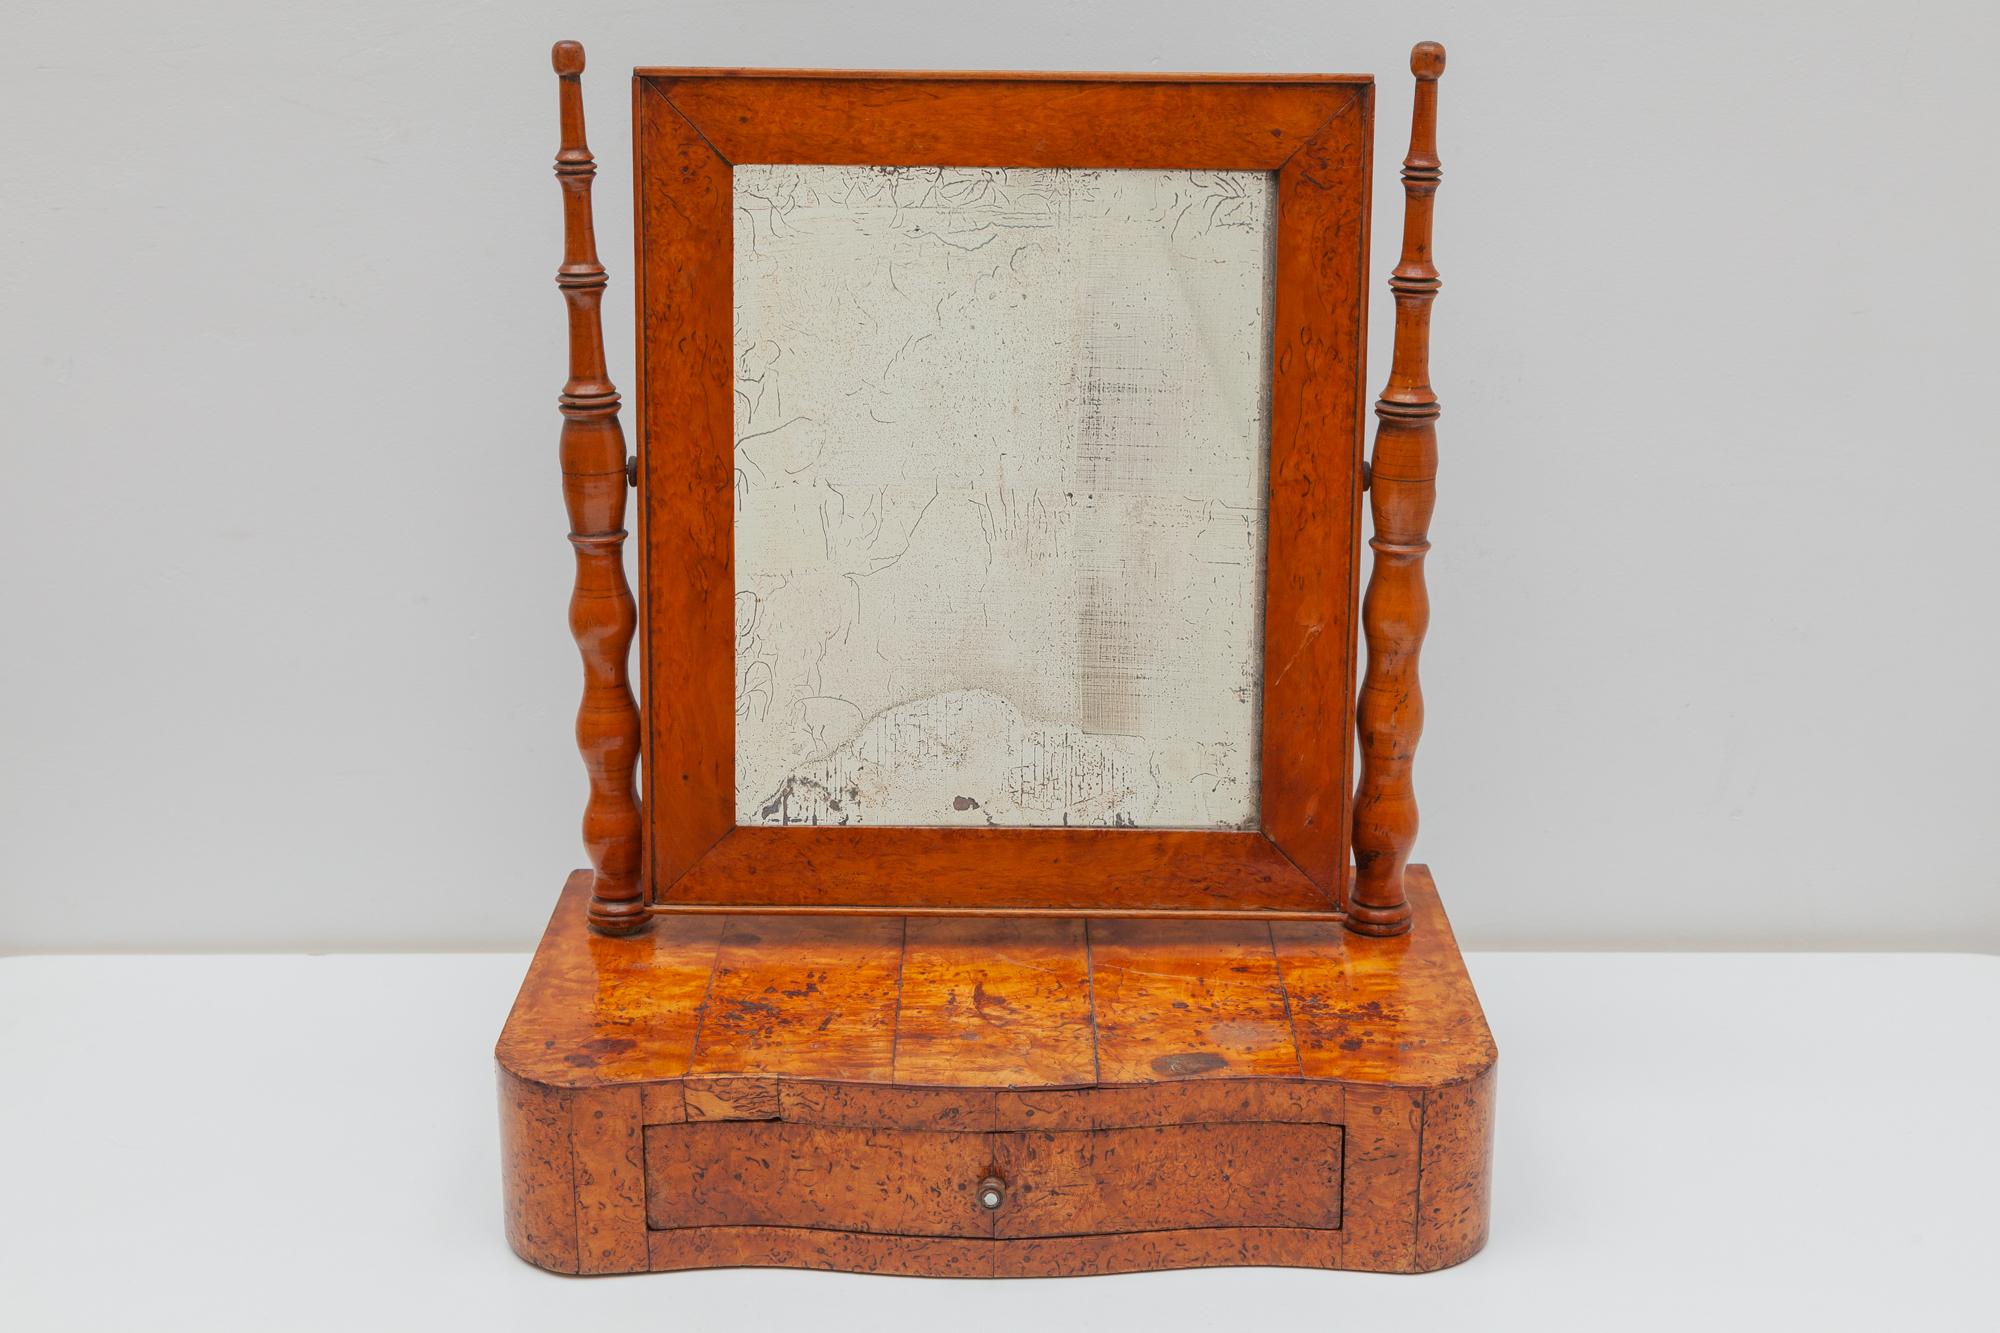 Magnifique miroir de table de vanité Biedermeier du XIXe siècle de la seconde période en Autriche, vers 1850. Le joli miroir de courtoisie a été plaqué en loupe fine et présente une finition brillante à la gomme-laque, polie à la main. Le miroir,